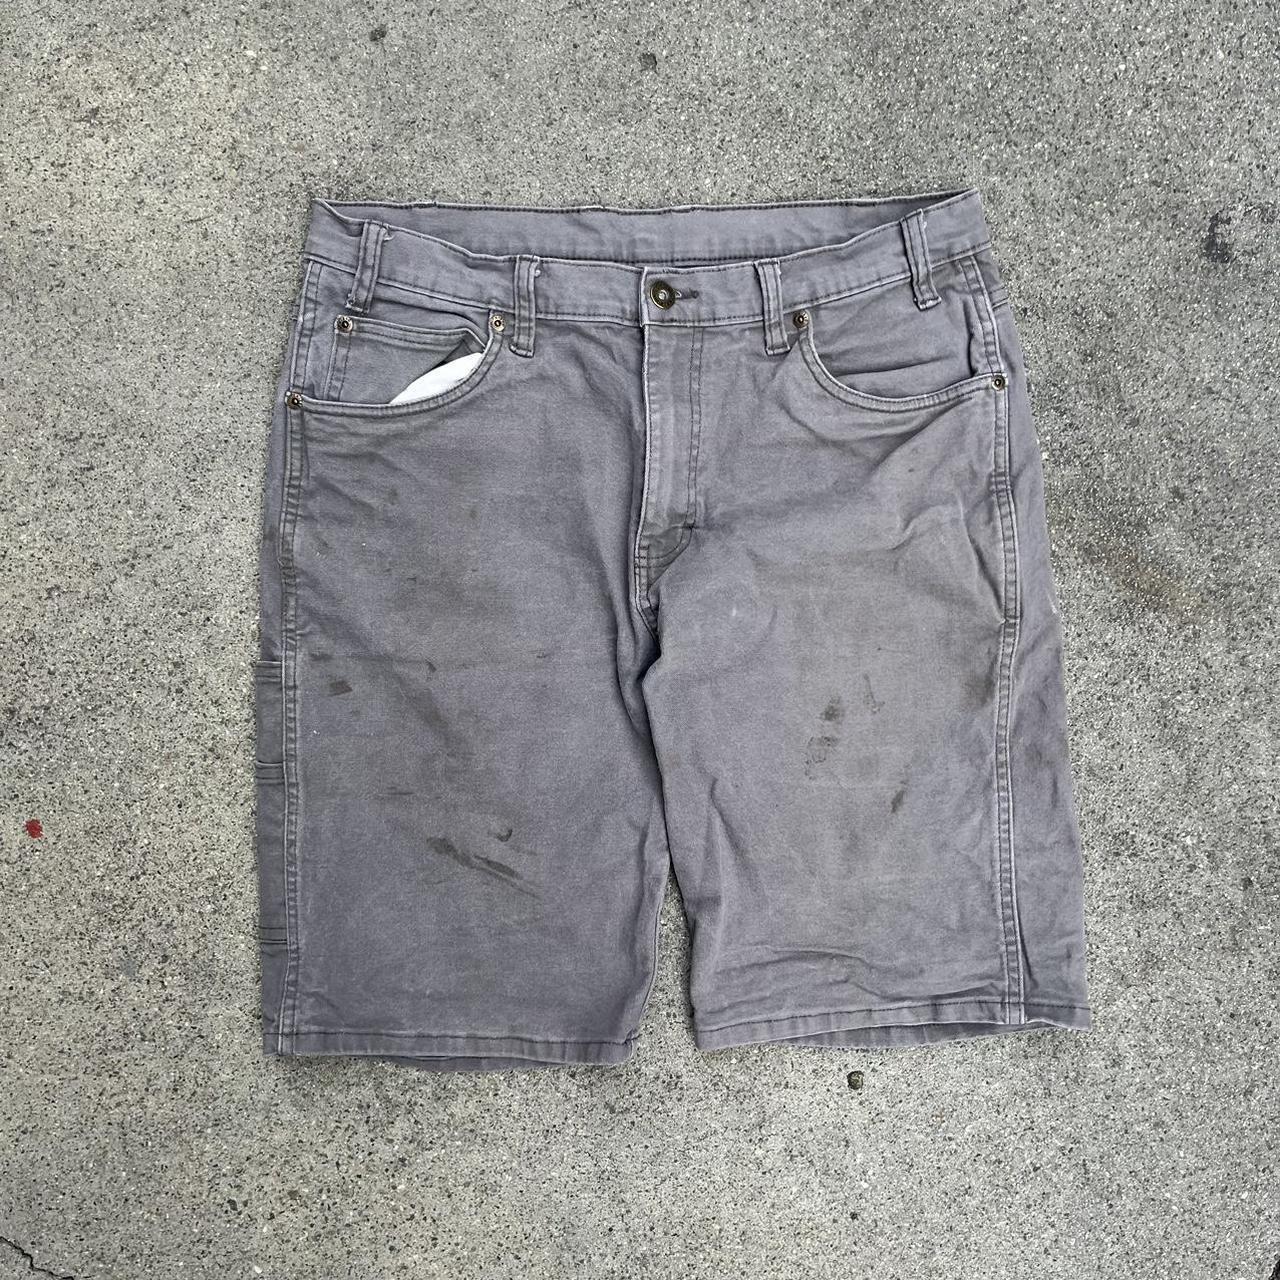 Grey Dark Washed Dickies Carpenter Shorts • 34... - Depop